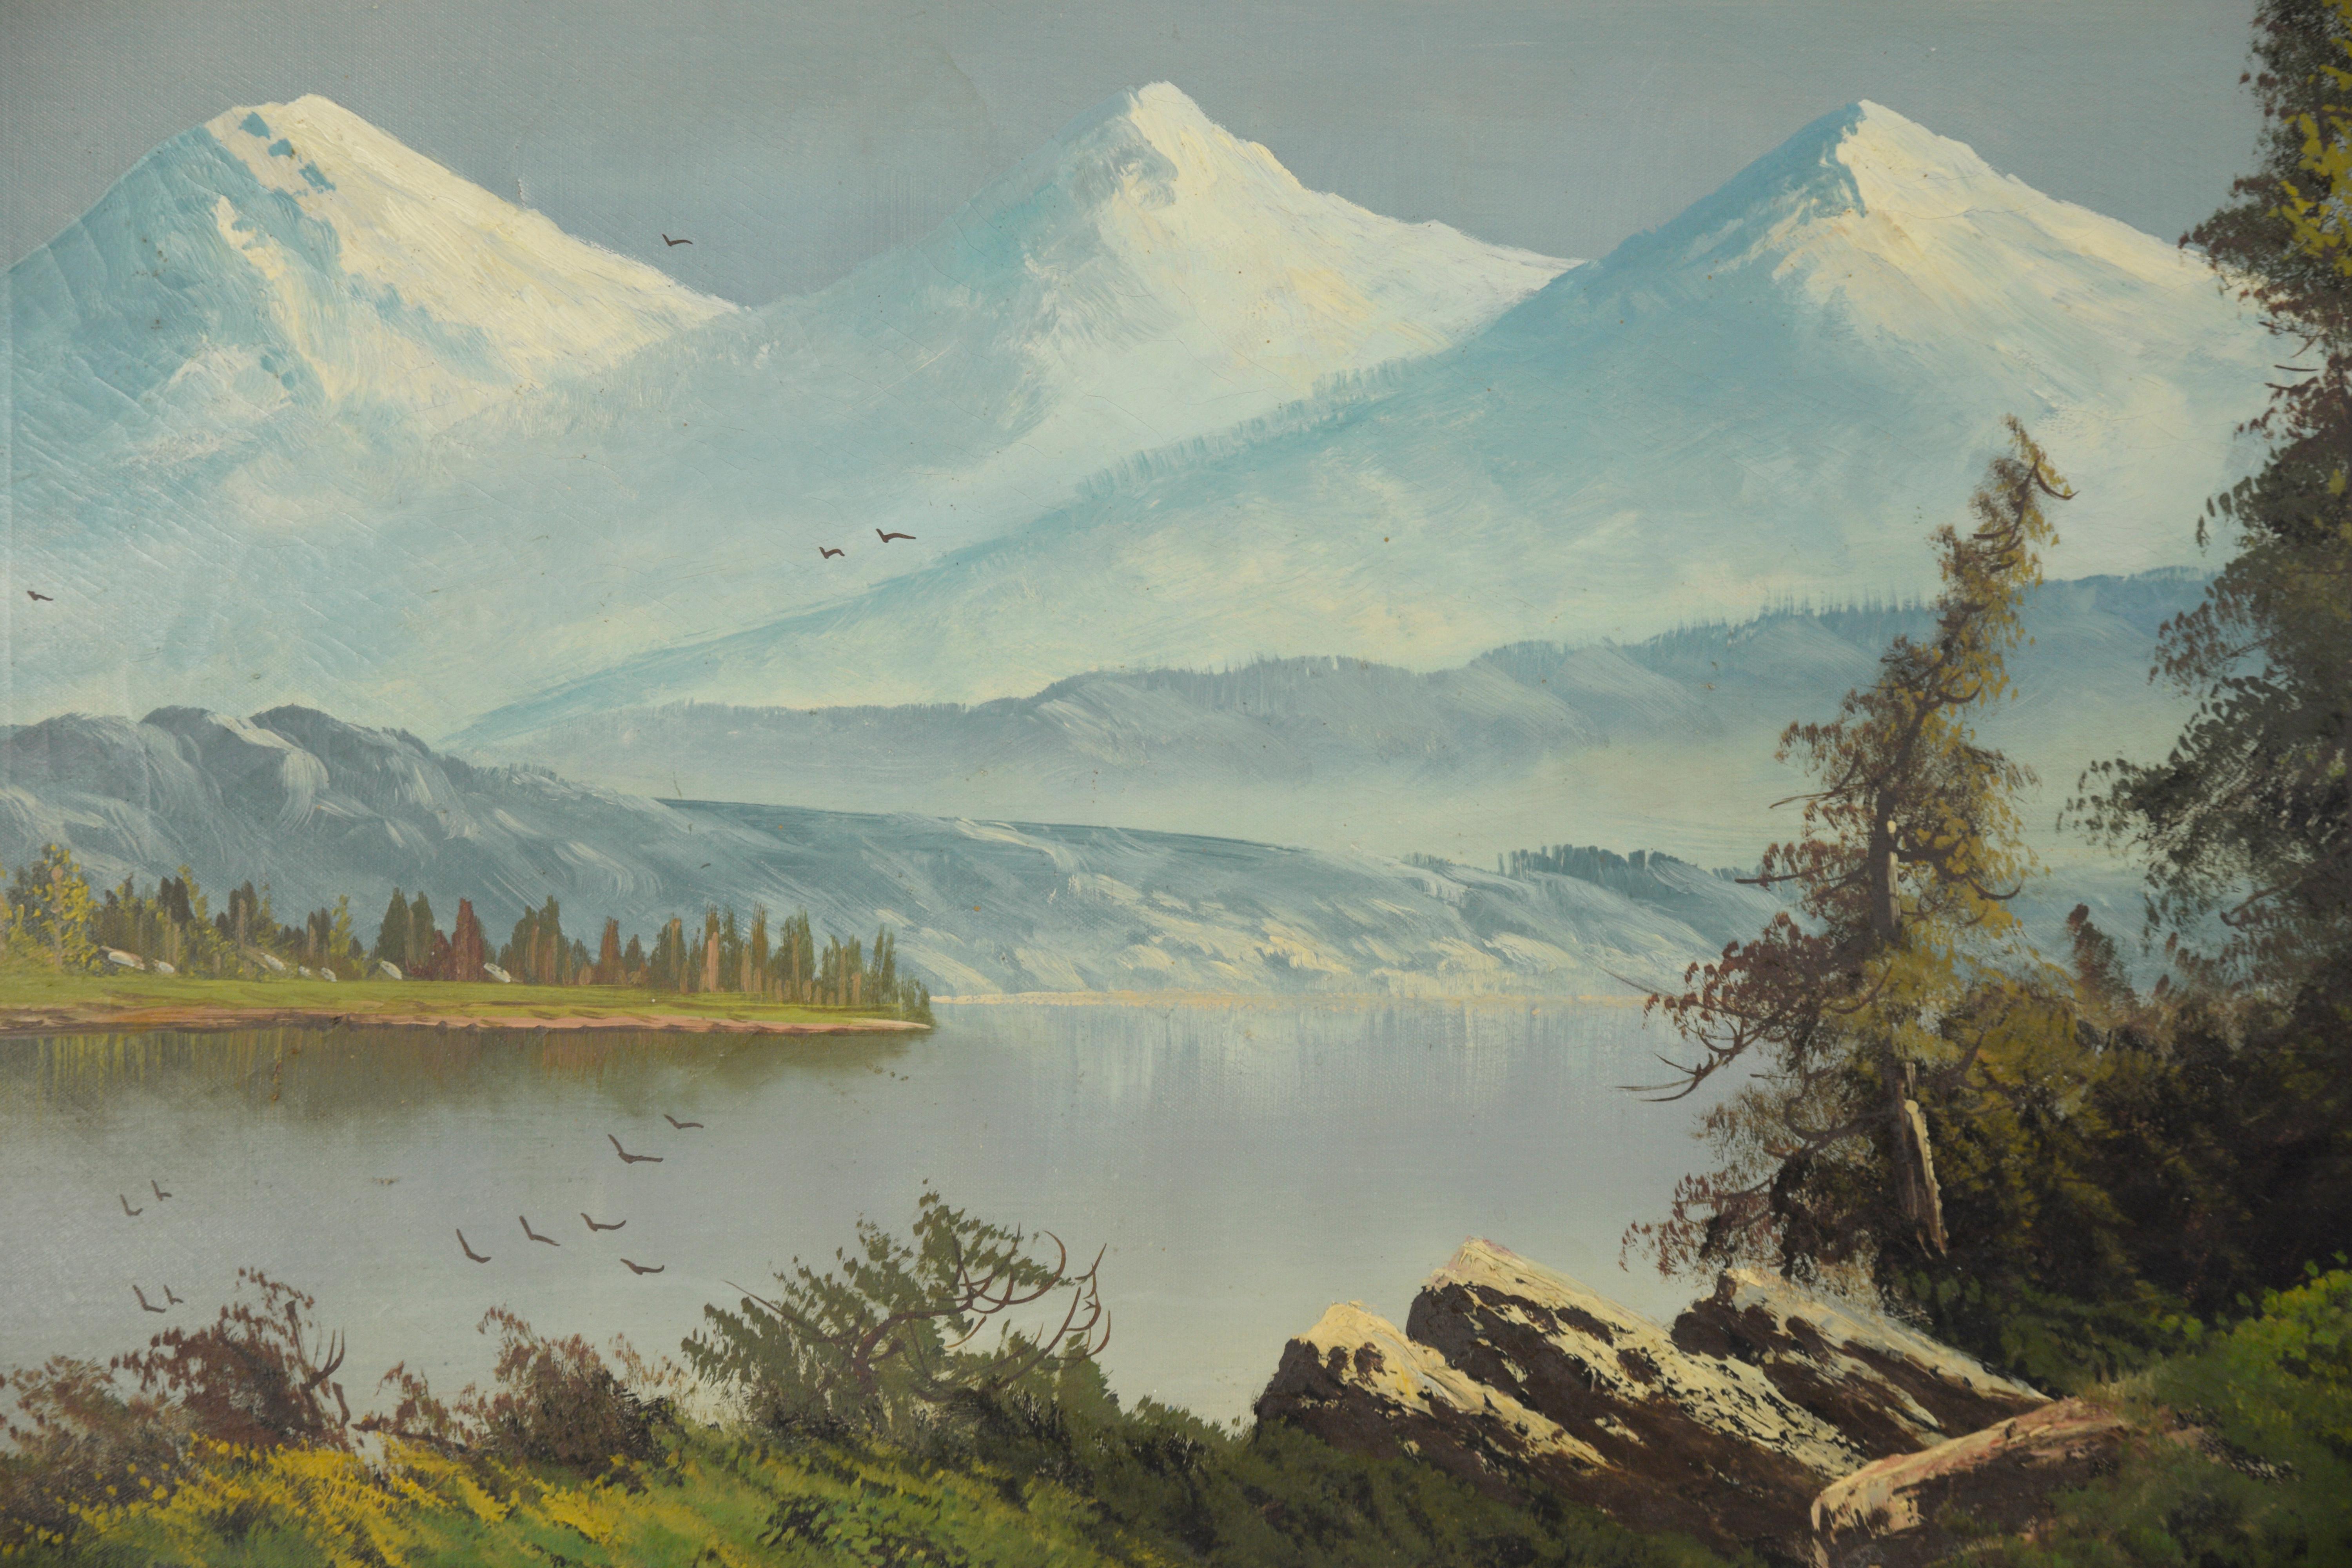 Trois sœurs dans la chaîne des Cascades, Oregon
Scène de paysage représentant trois montagnes enneigées, également connues sous le nom de 